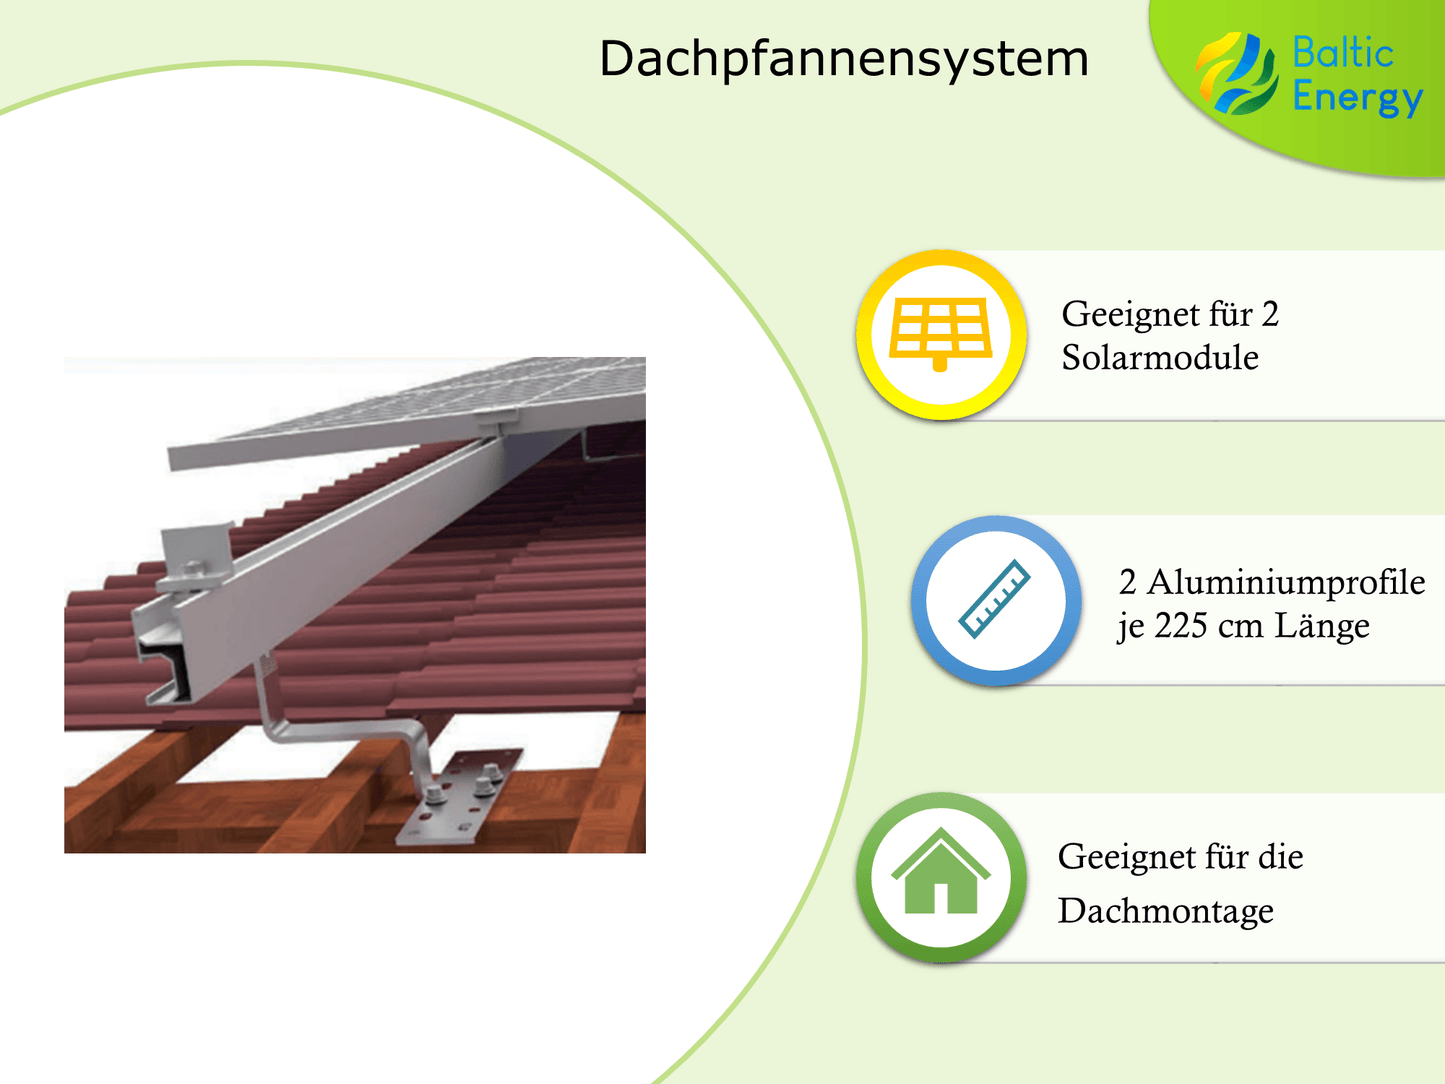 Dachpfannensystem 245 - Baltic Energy